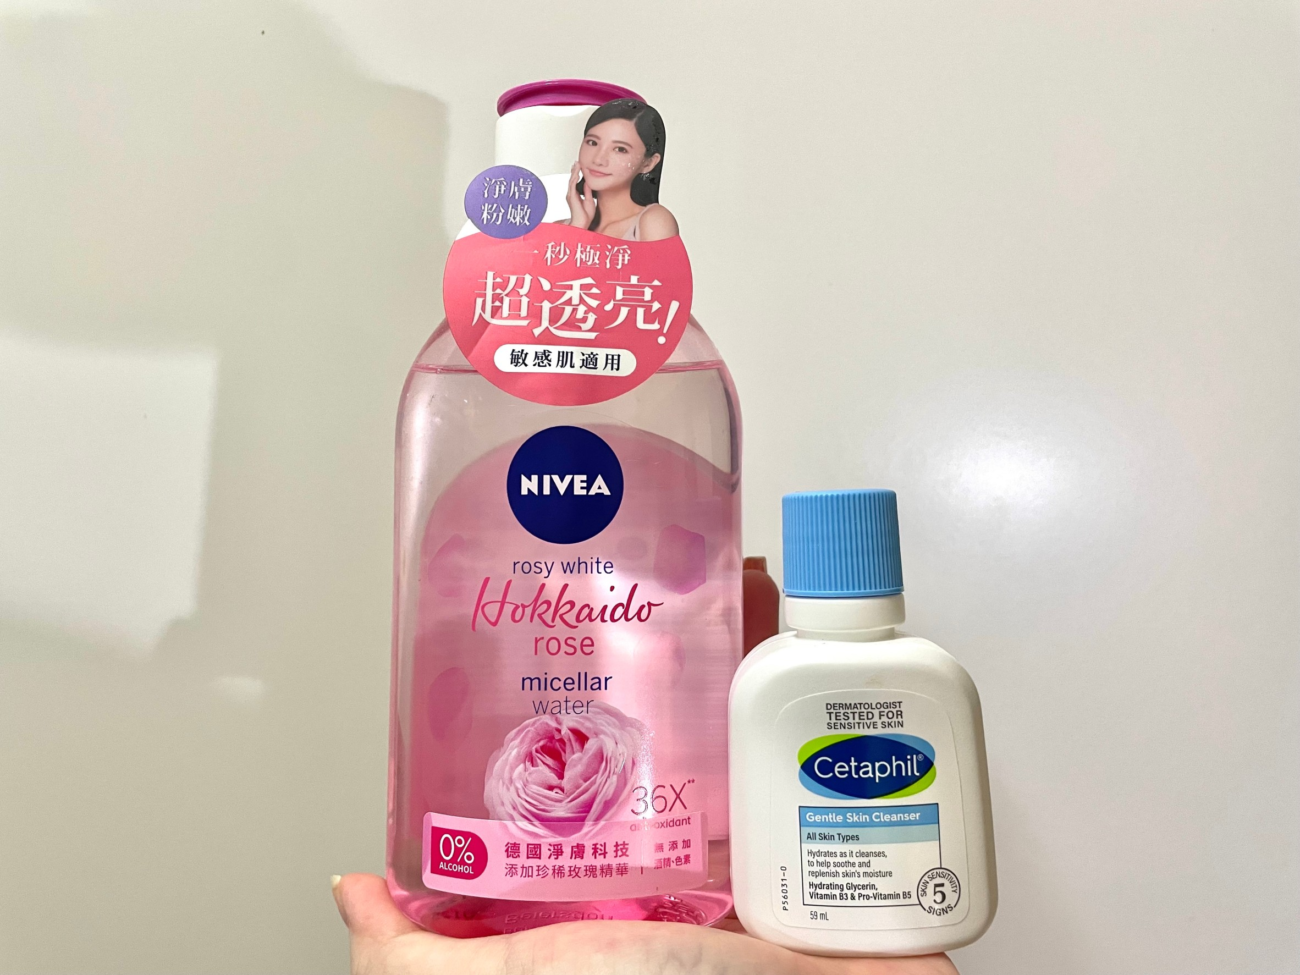 妮維雅粉嫩嫩玫瑰卸妝水vs舒特膚溫和潔膚乳